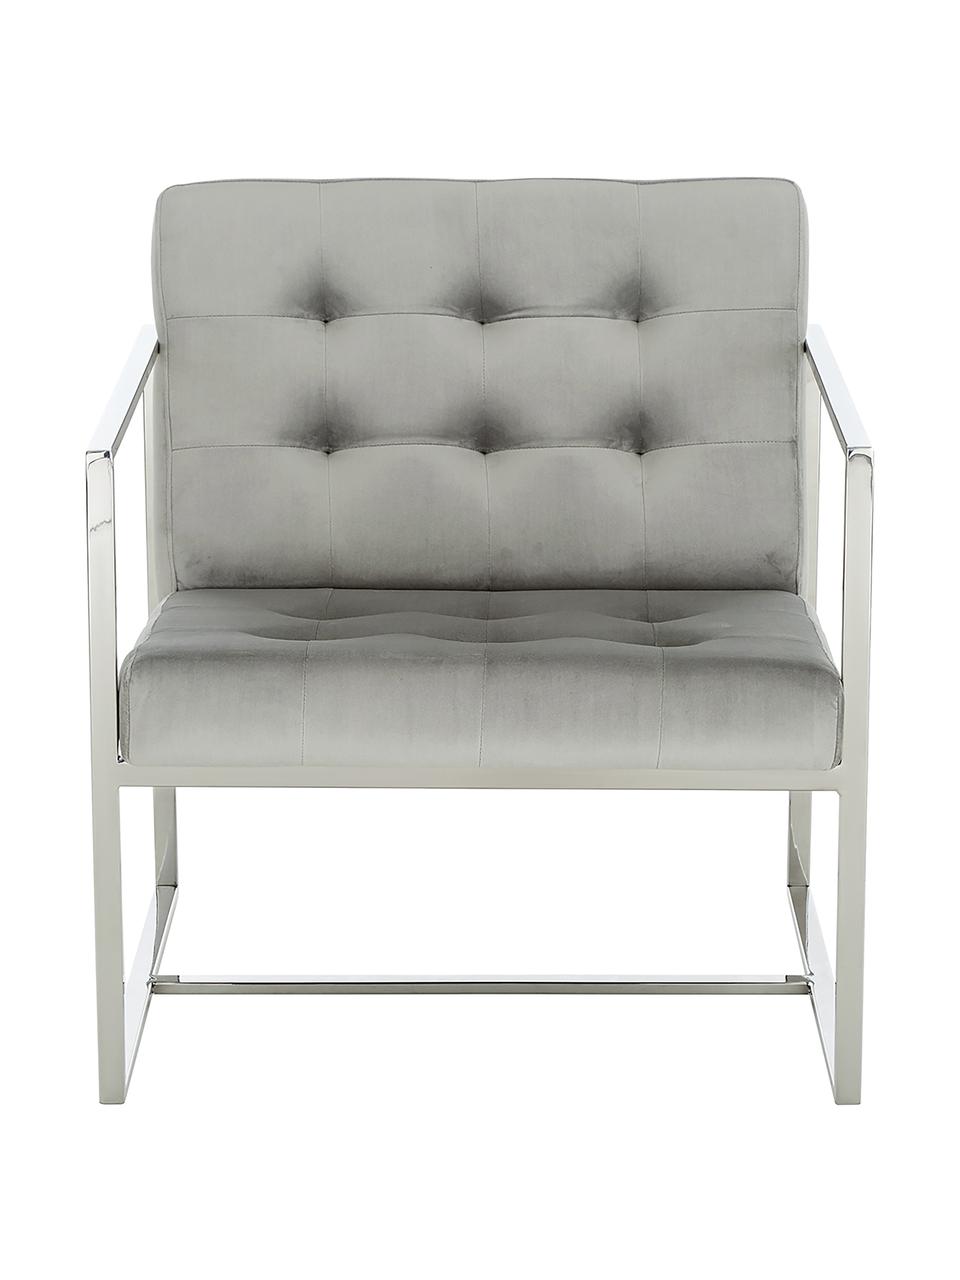 Fluwelen lounge fauteuil Manhattan in grijs, Bekleding: fluweel (polyester), Frame: gegalvaniseerd metaal, Fluweel grijs, zilverkleurig, B 70 x H 72 cm